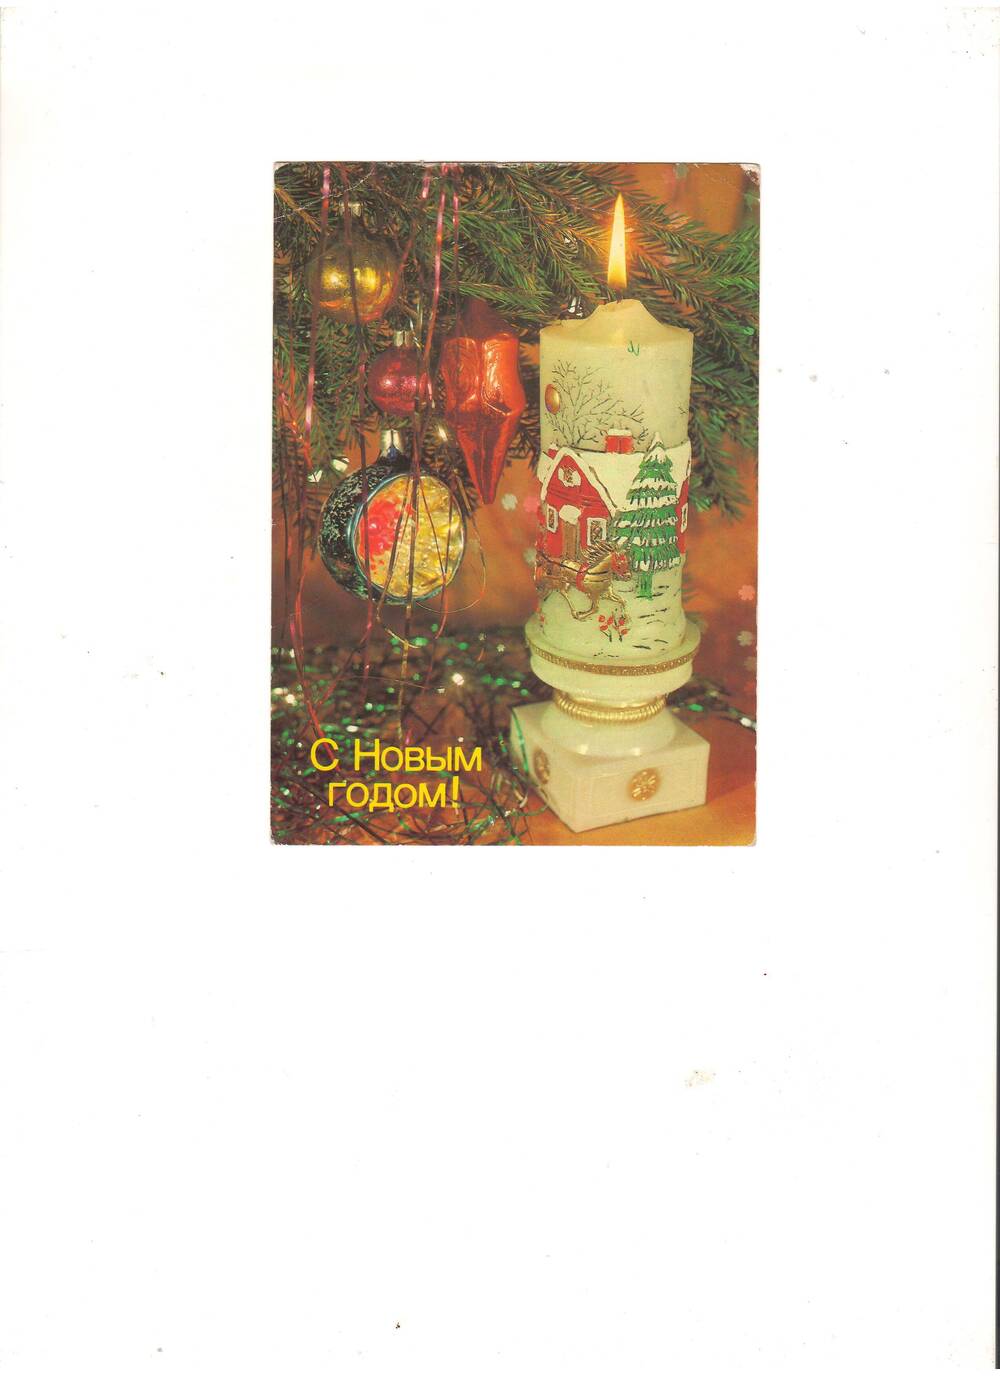 Открытка поздравительная С Новыми годом!, 1989 г. Фотокомпозиция И.Дергилева.